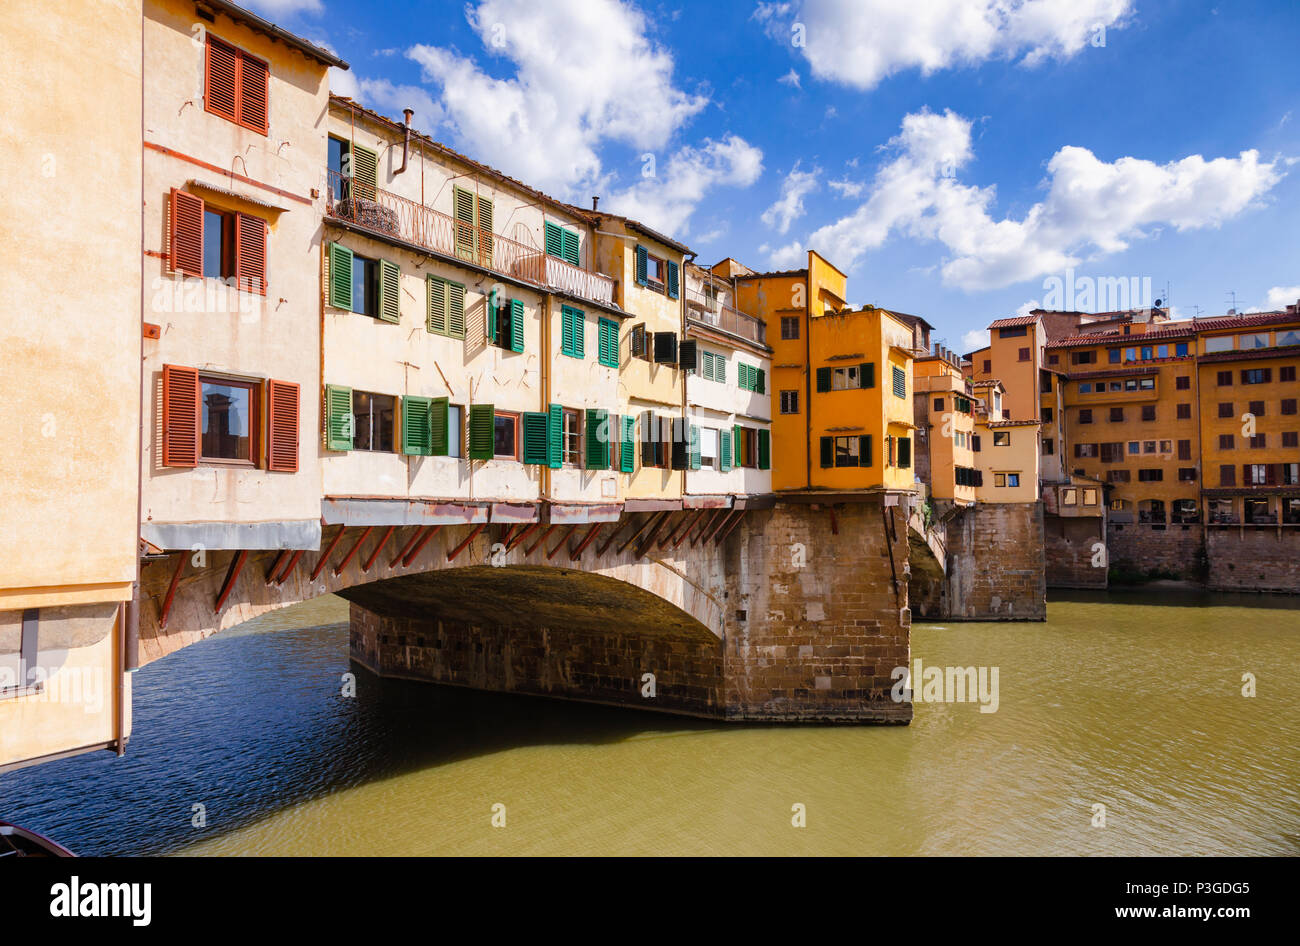 Malerische Ponte Vecchio (Alte Brücke) Mittelalterliche geschlossen - brüstungs segmentale Brücke über den Fluss Arno, eine beliebte Touristenattraktion von Florenz, Tusca Stockfoto